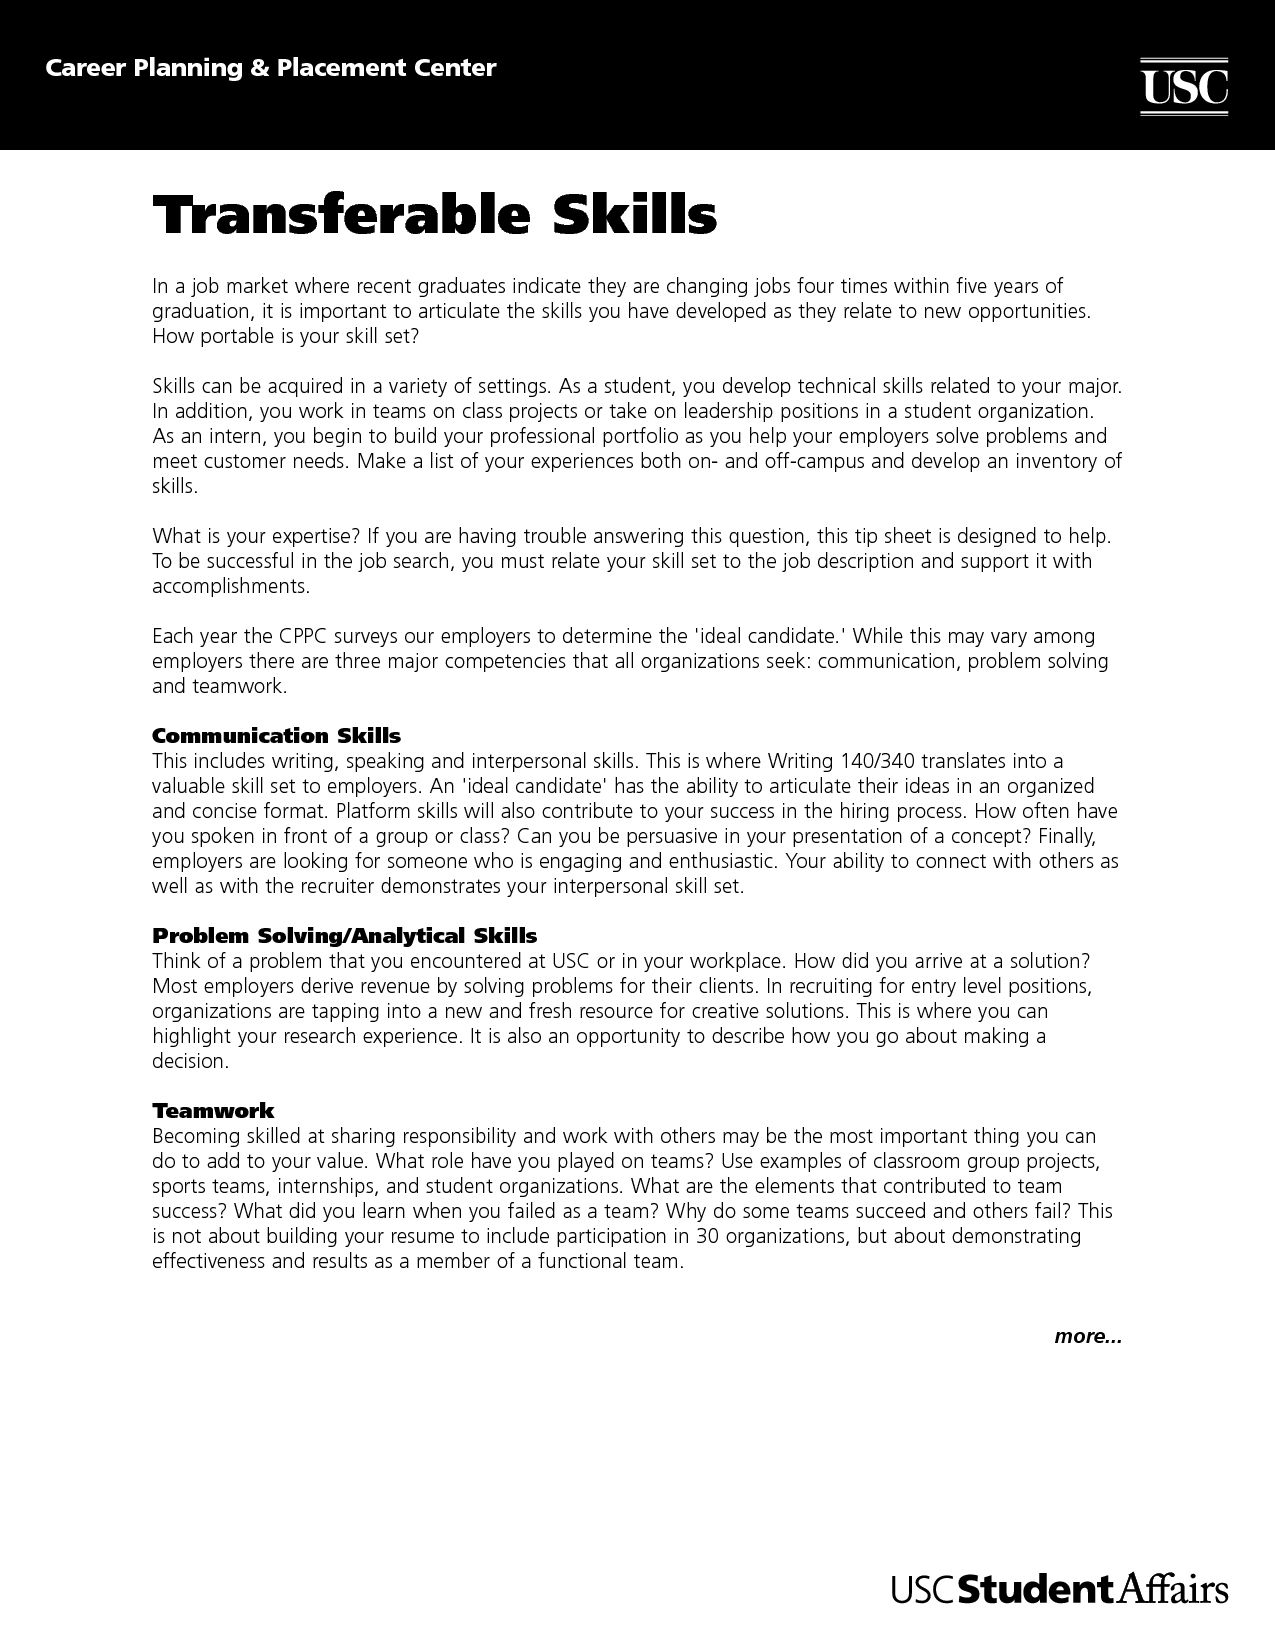 Sample Cover Letter Highlighting Transferable Skills